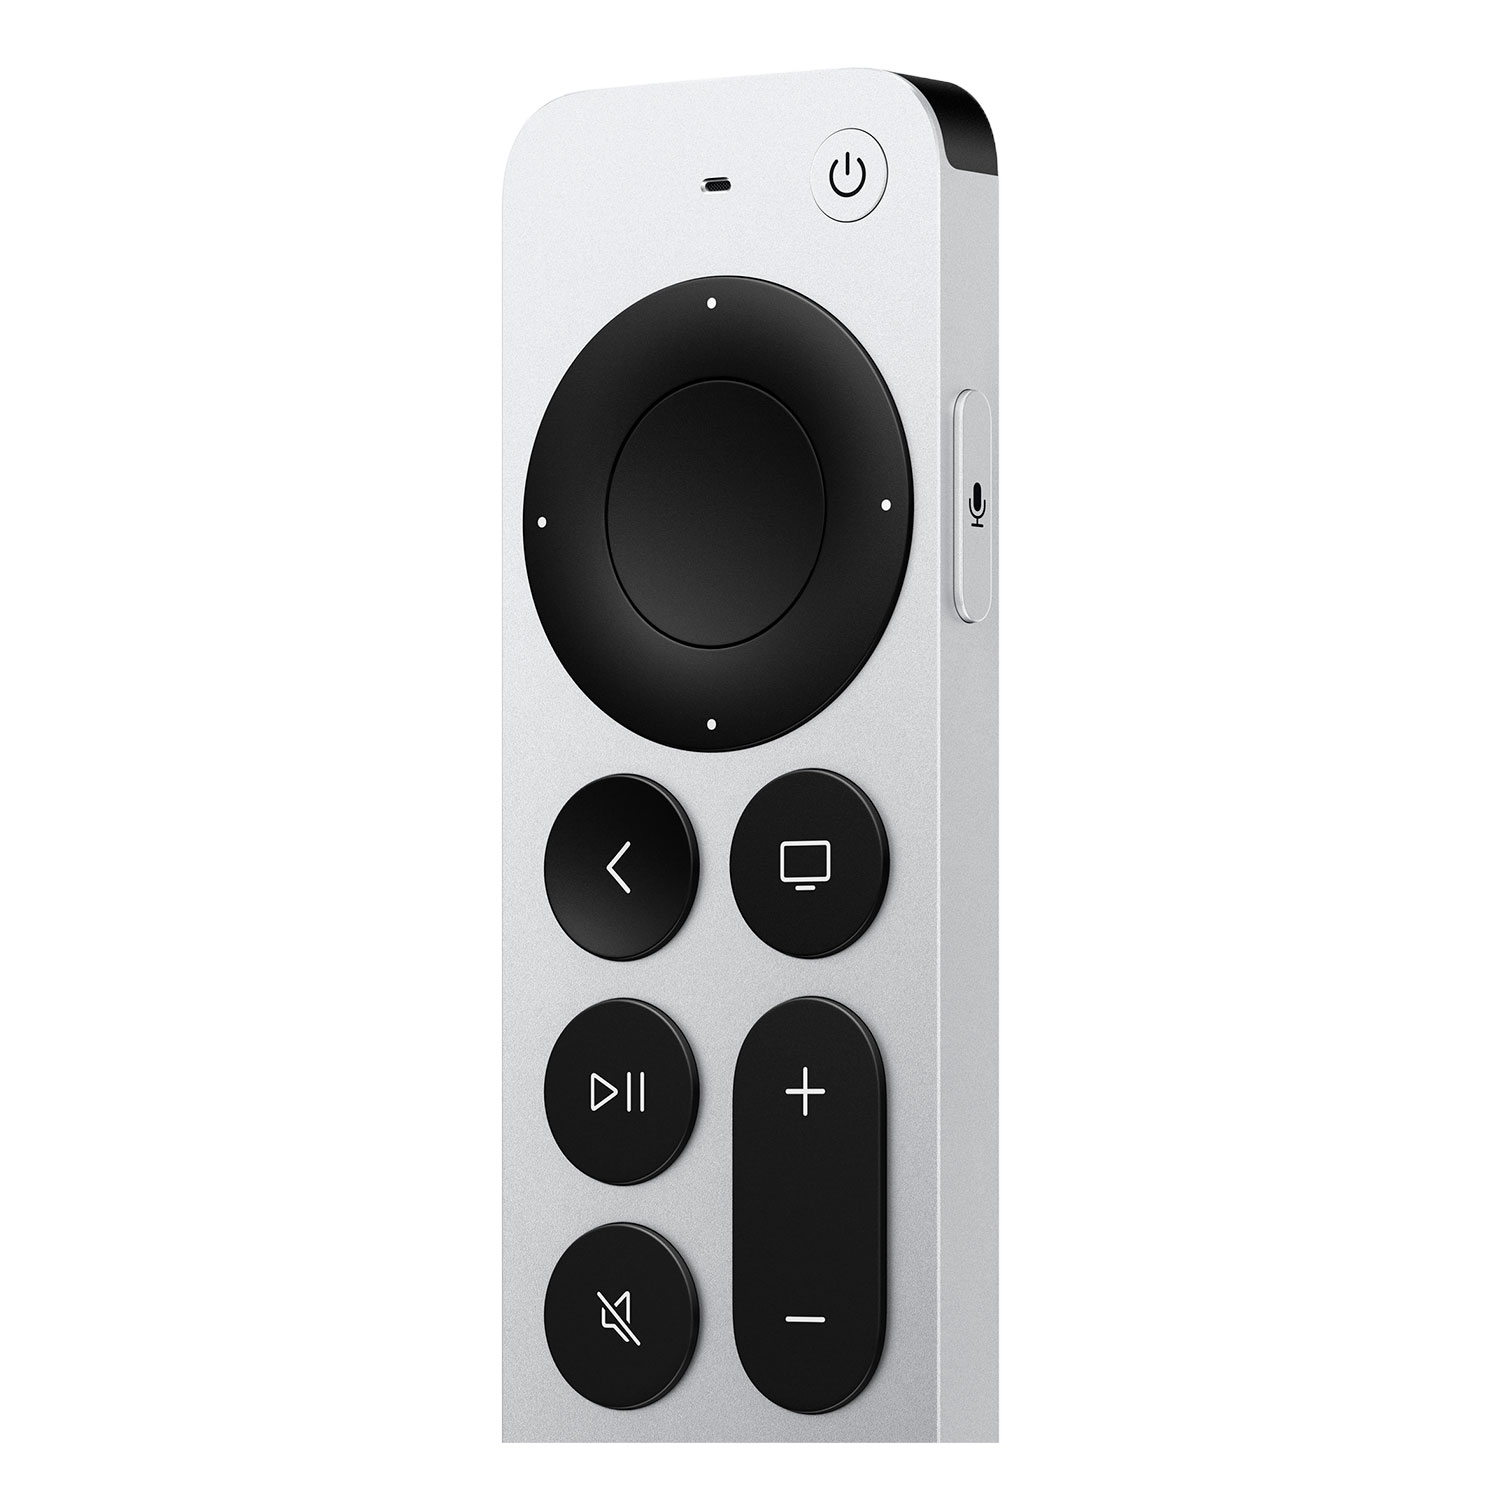 Apple TV MN893LZ/A 3ª Geração 4K Wi-Fi 128GB + Controle Siri Remote